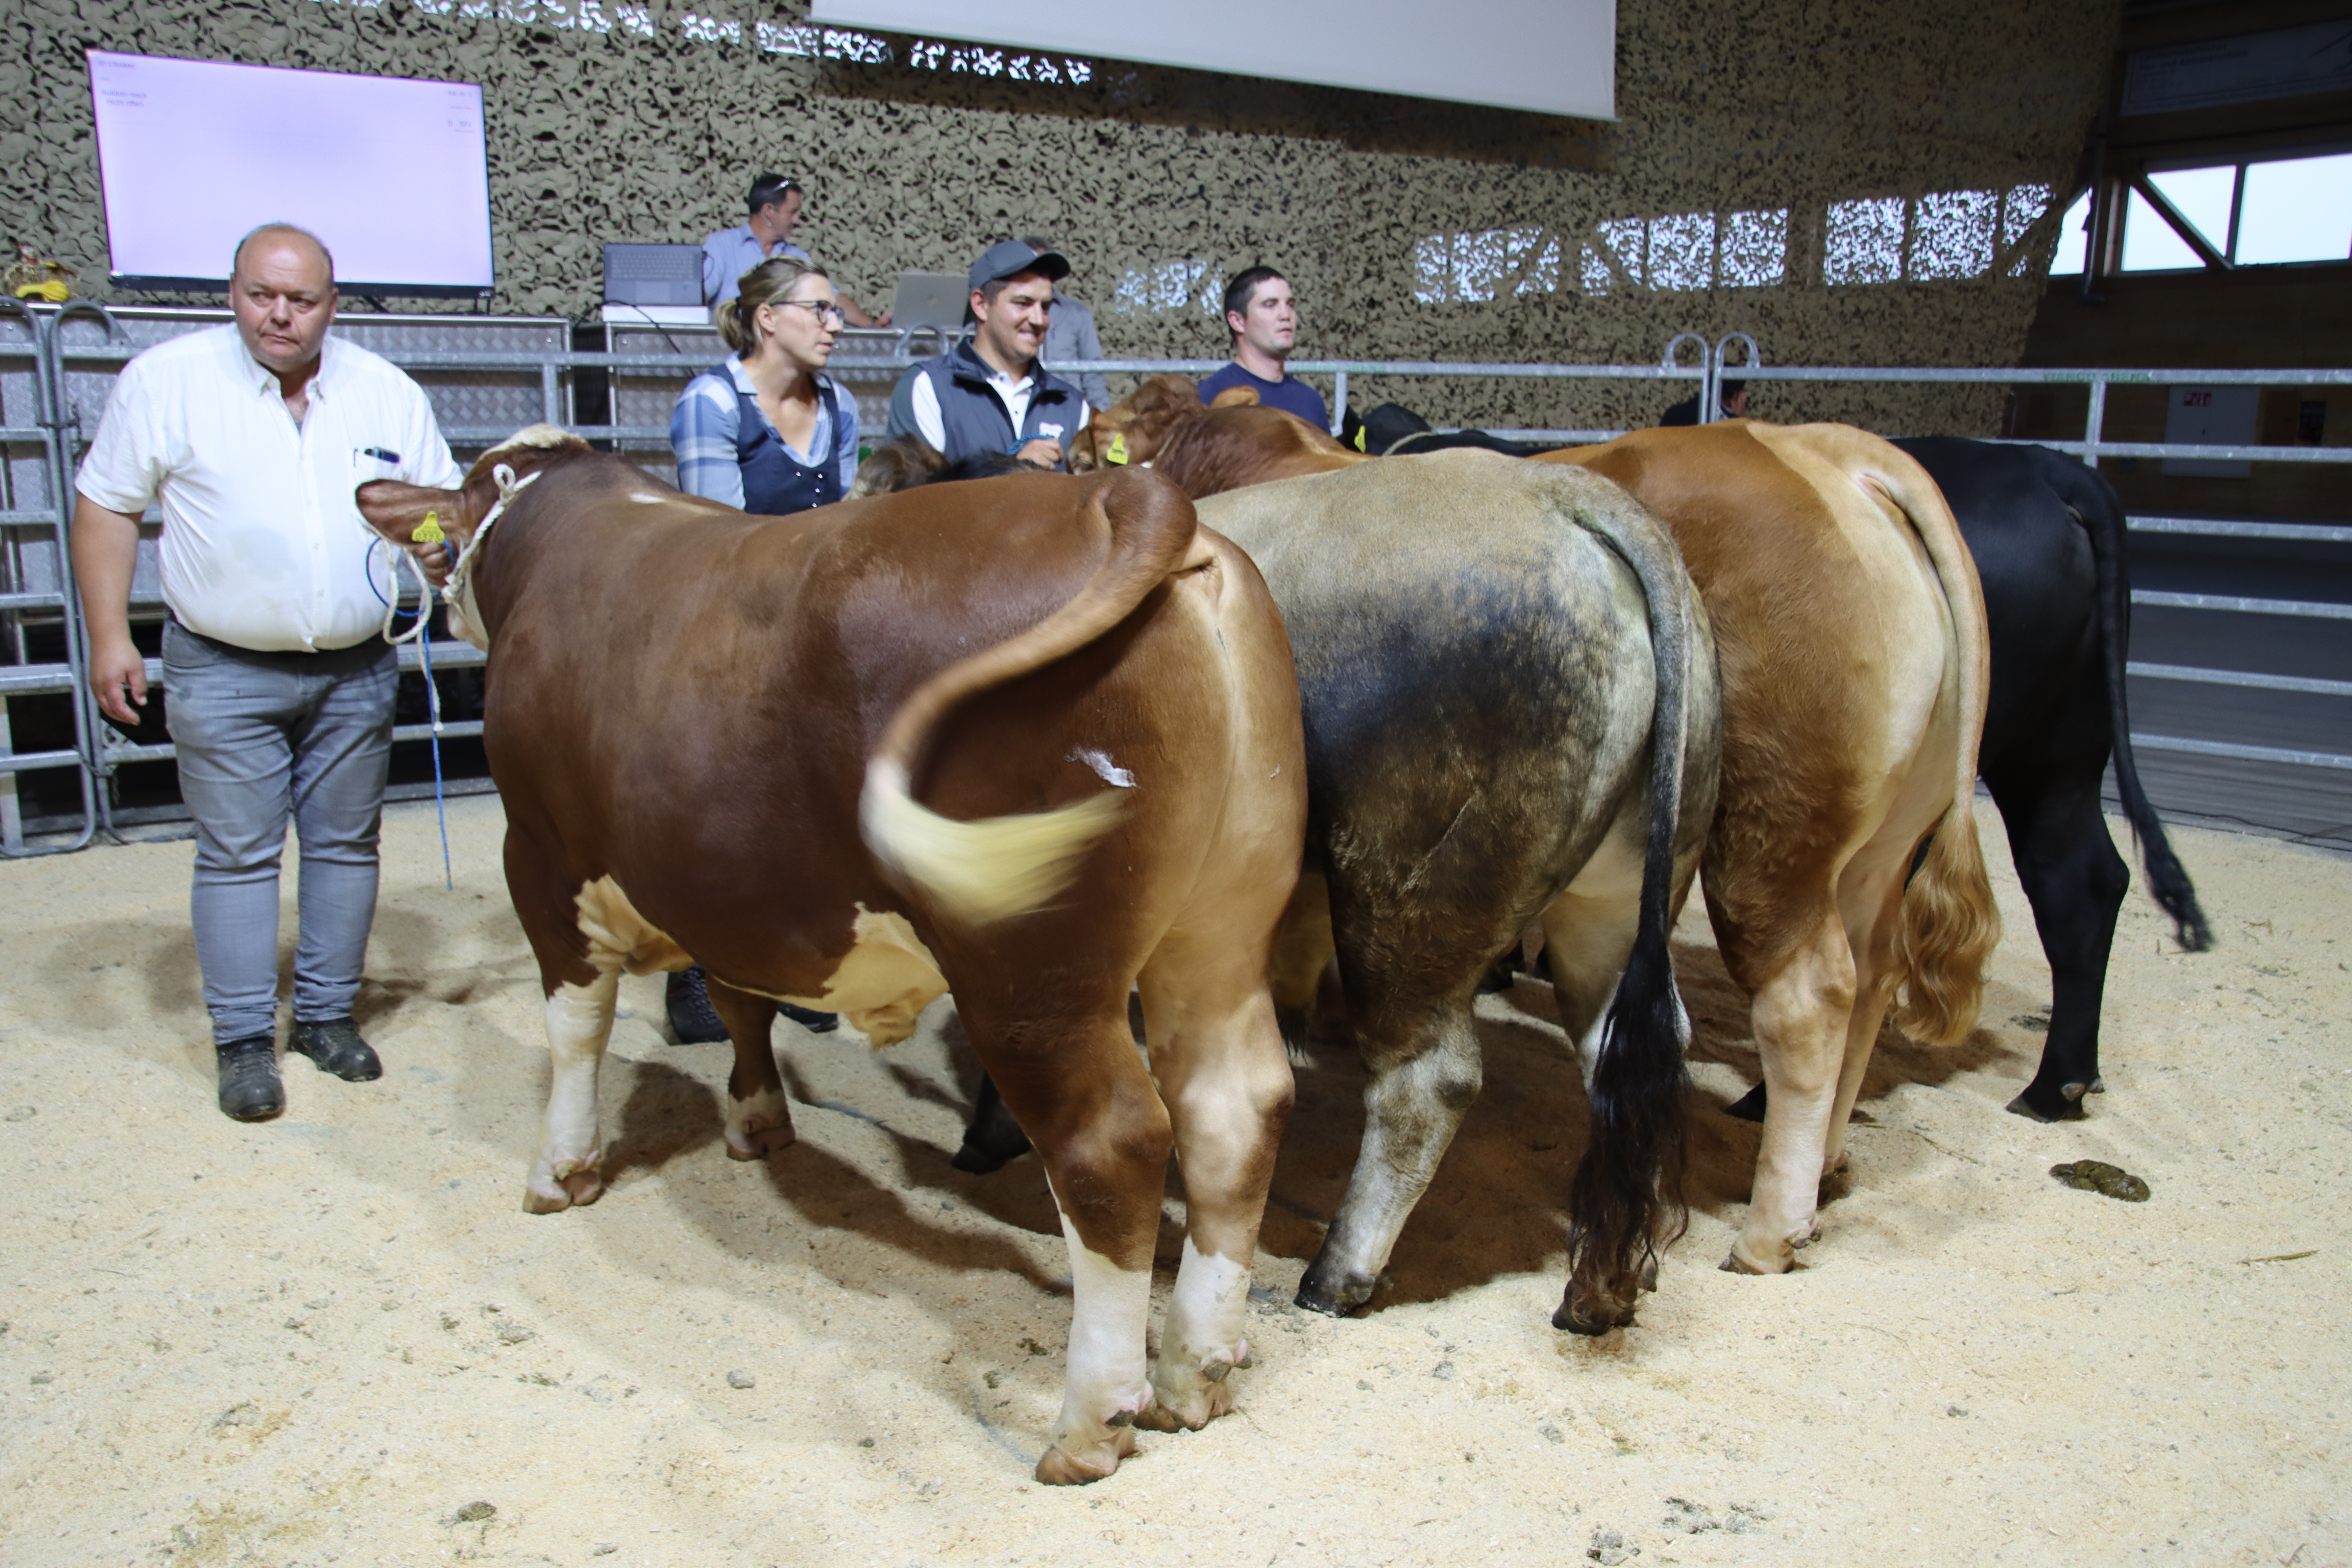 Légende : Un large choix de taureaux suisses attend les acheteurs au marché. Source : Vache mère Suisse